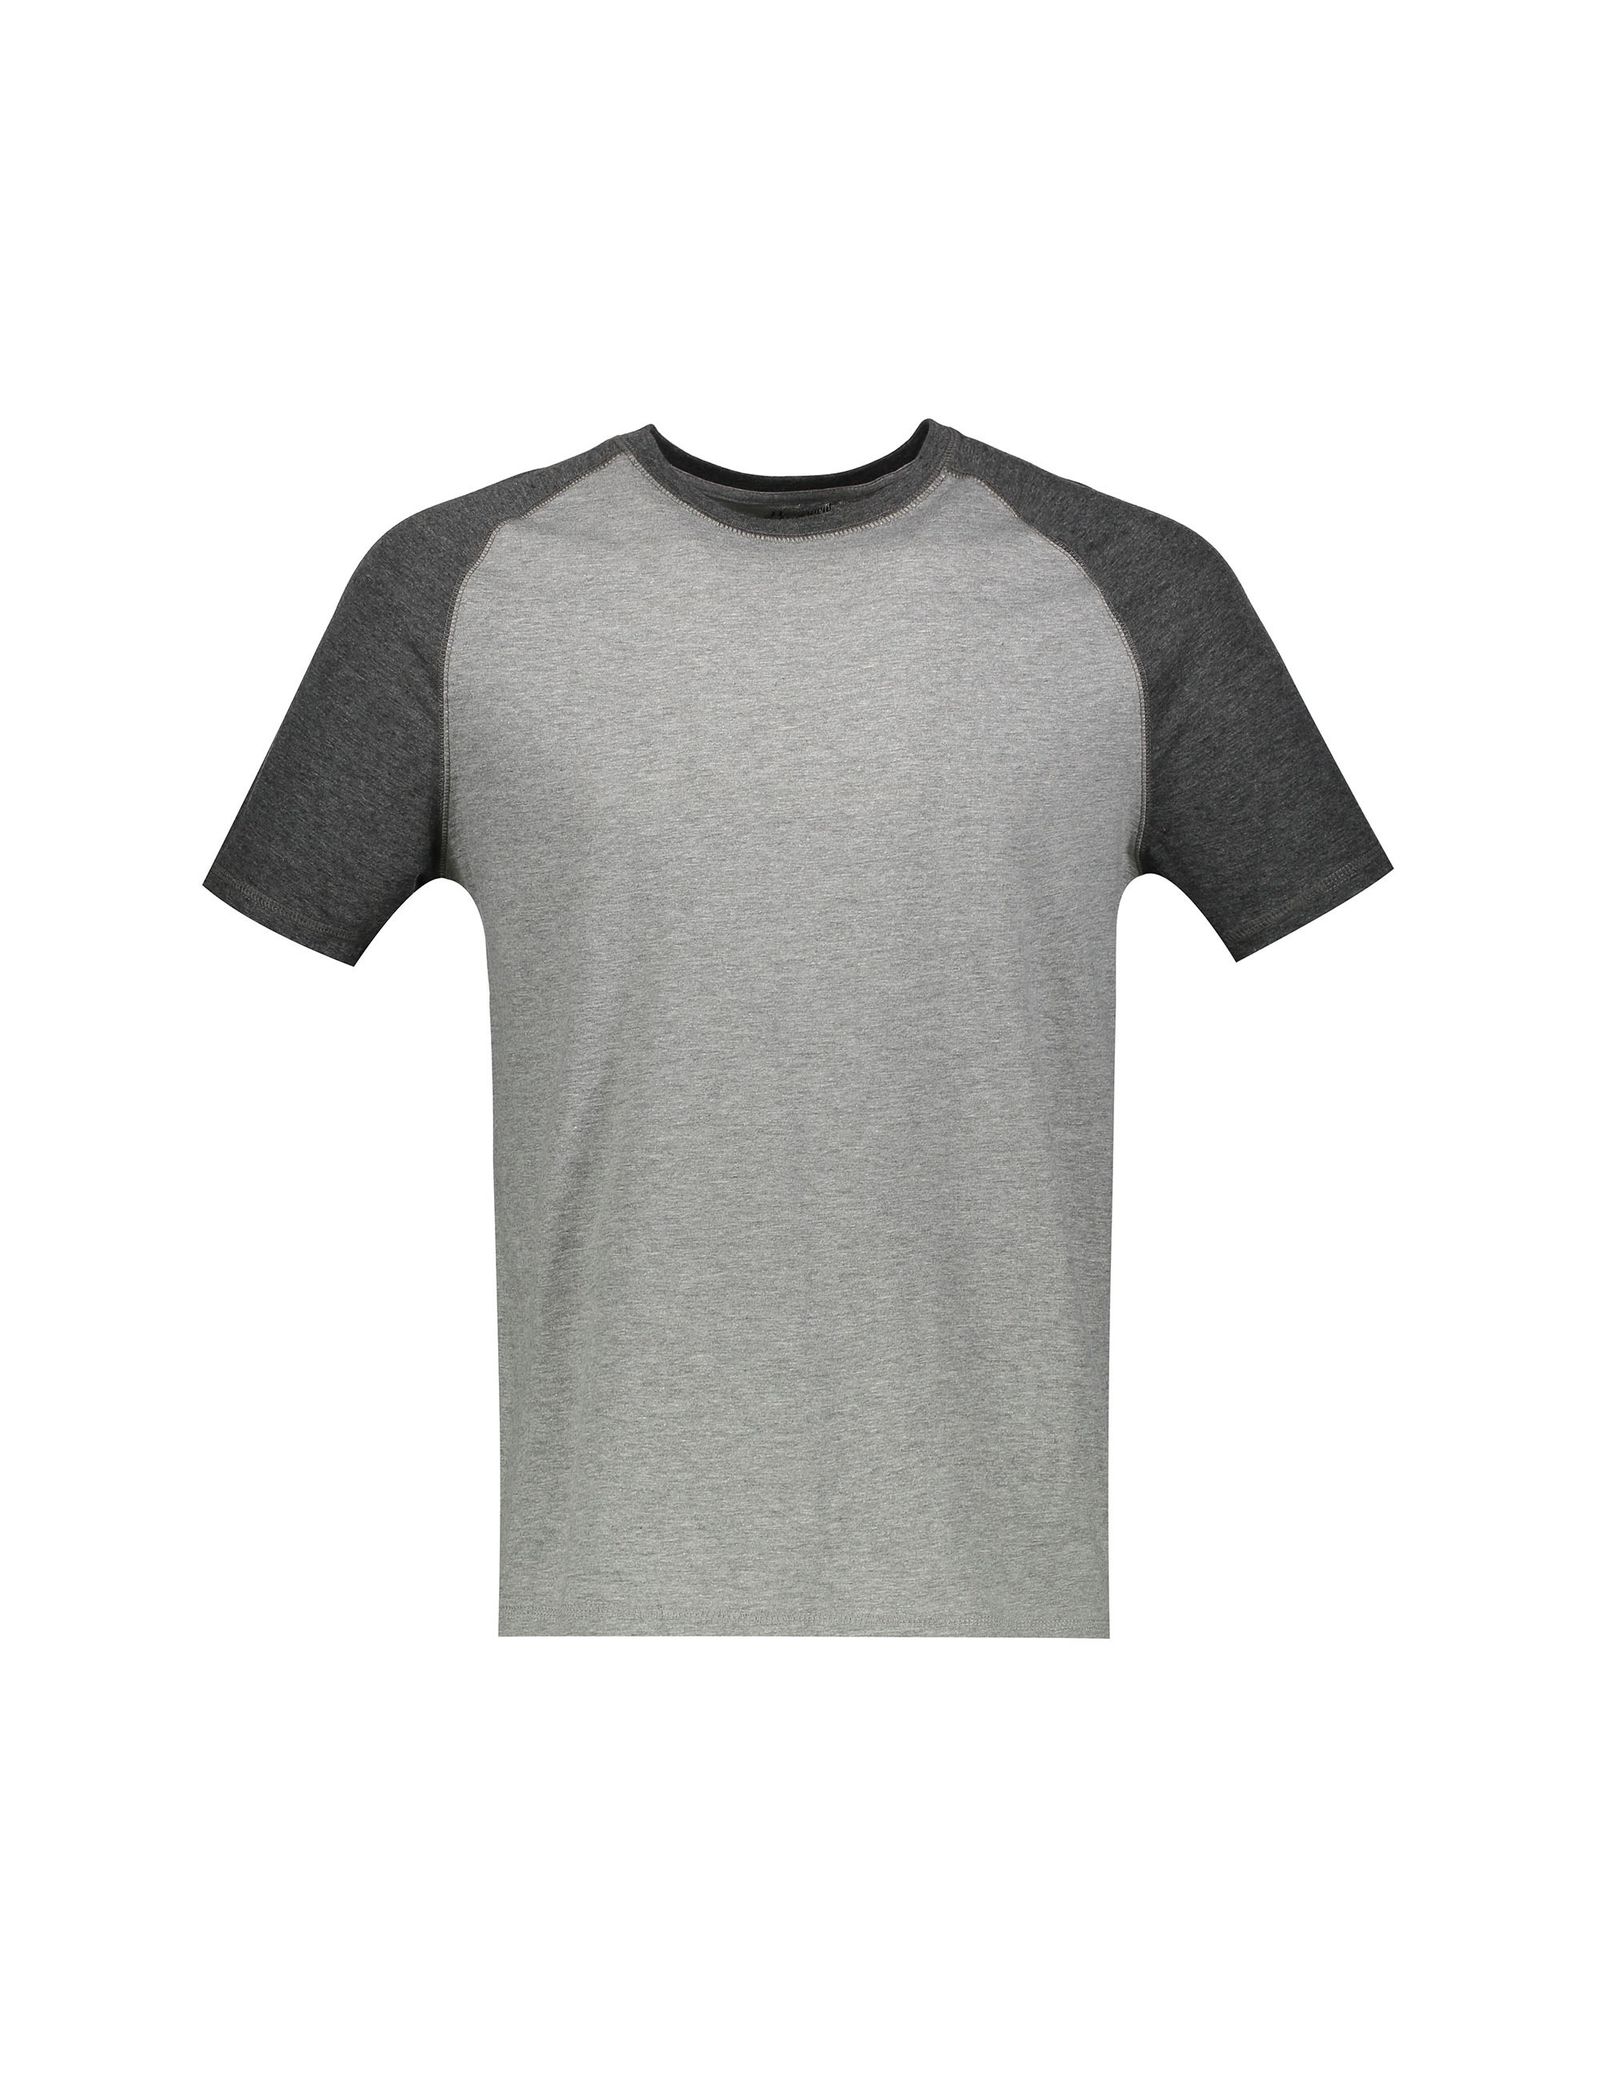 تی شرت و شلوارک راحتی نخی مردانه - سلیو - طوسي - 3